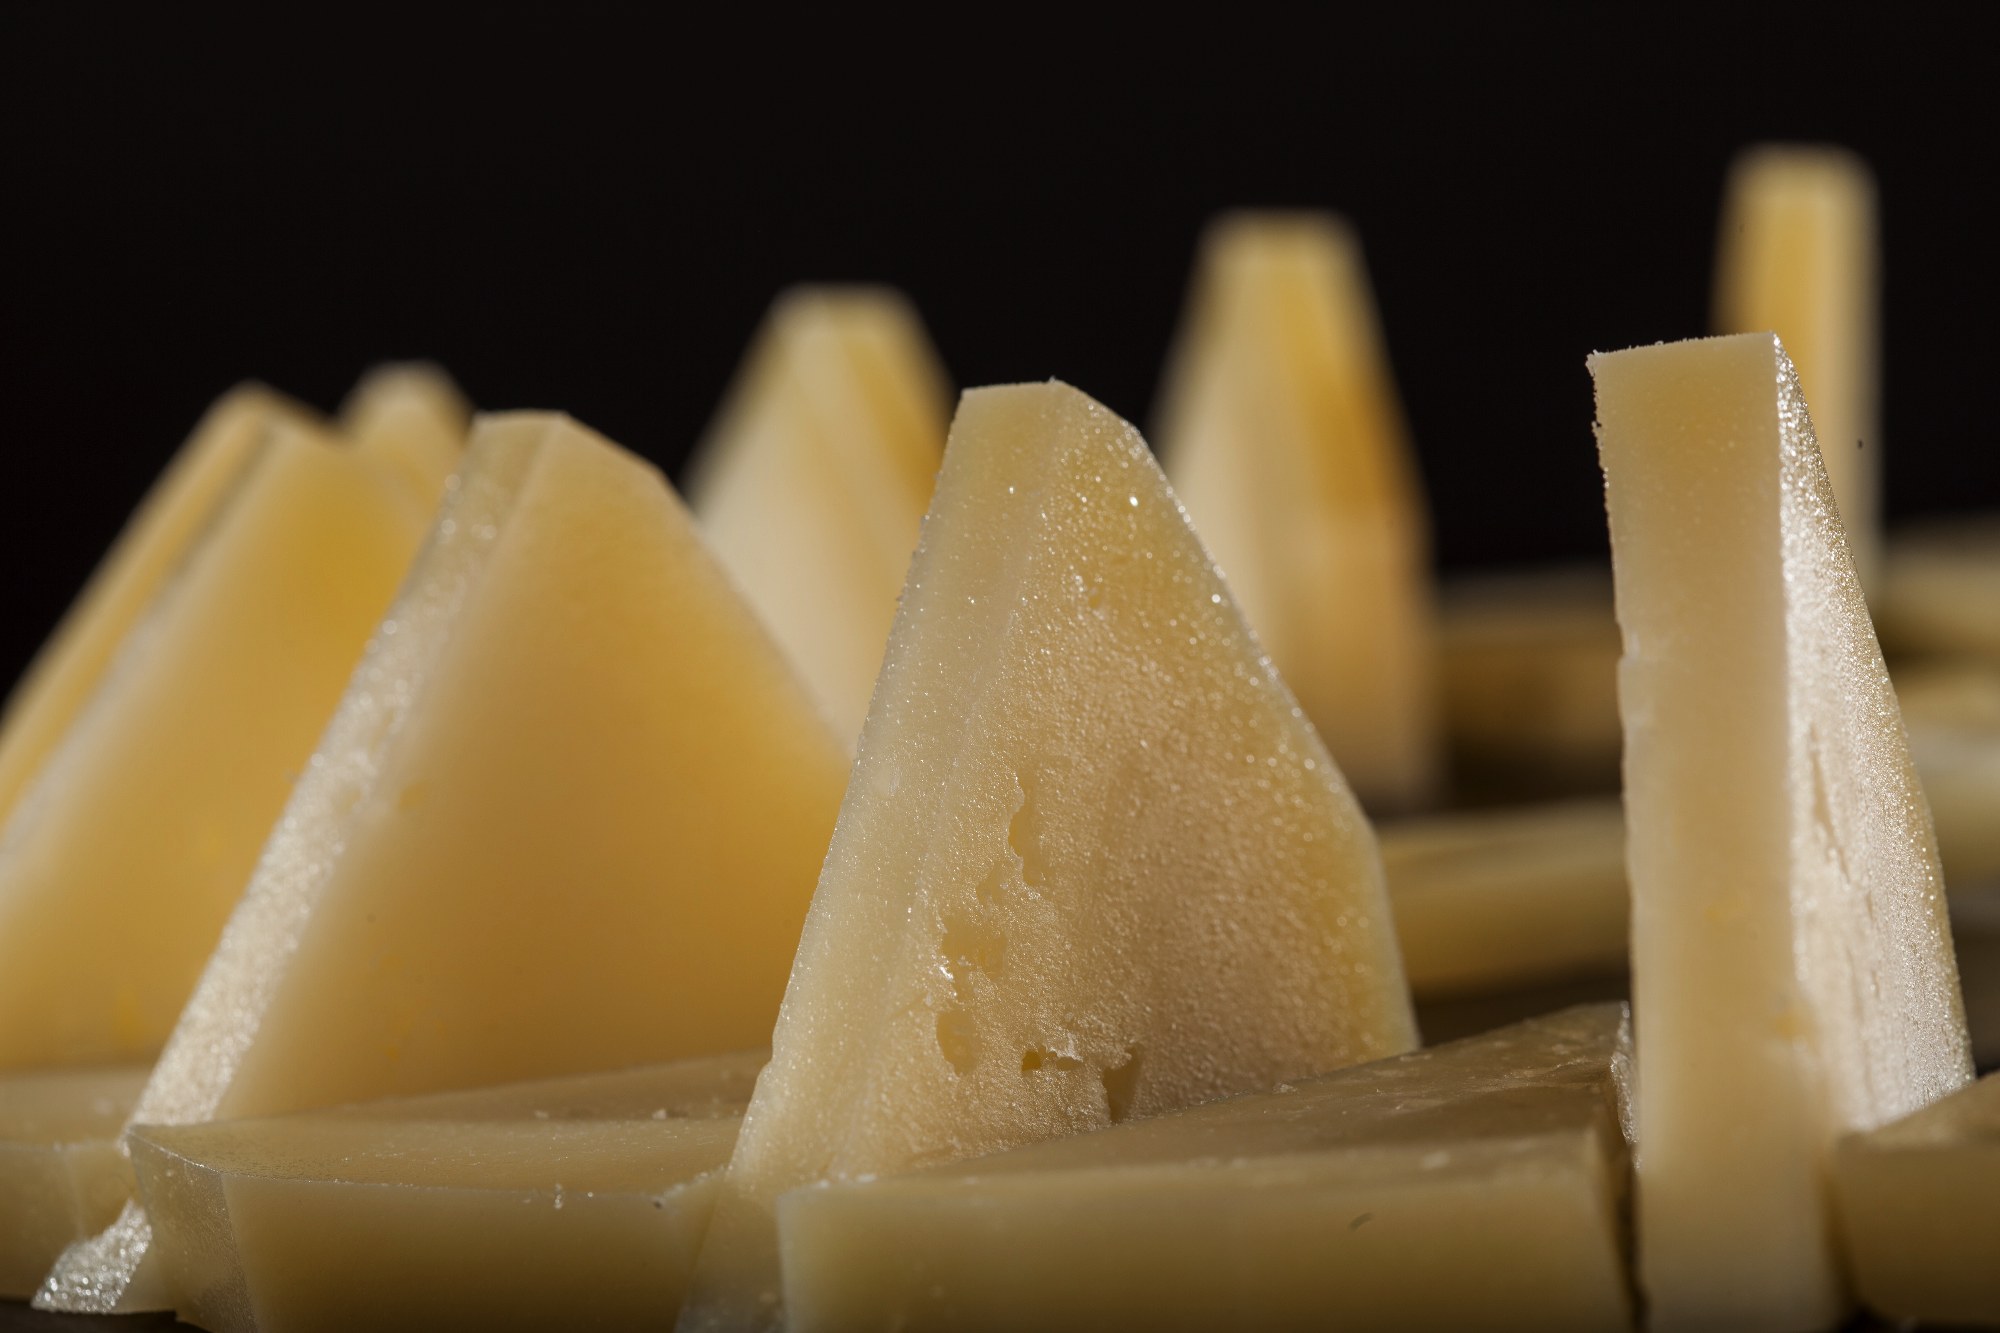 Cómo conservar el queso